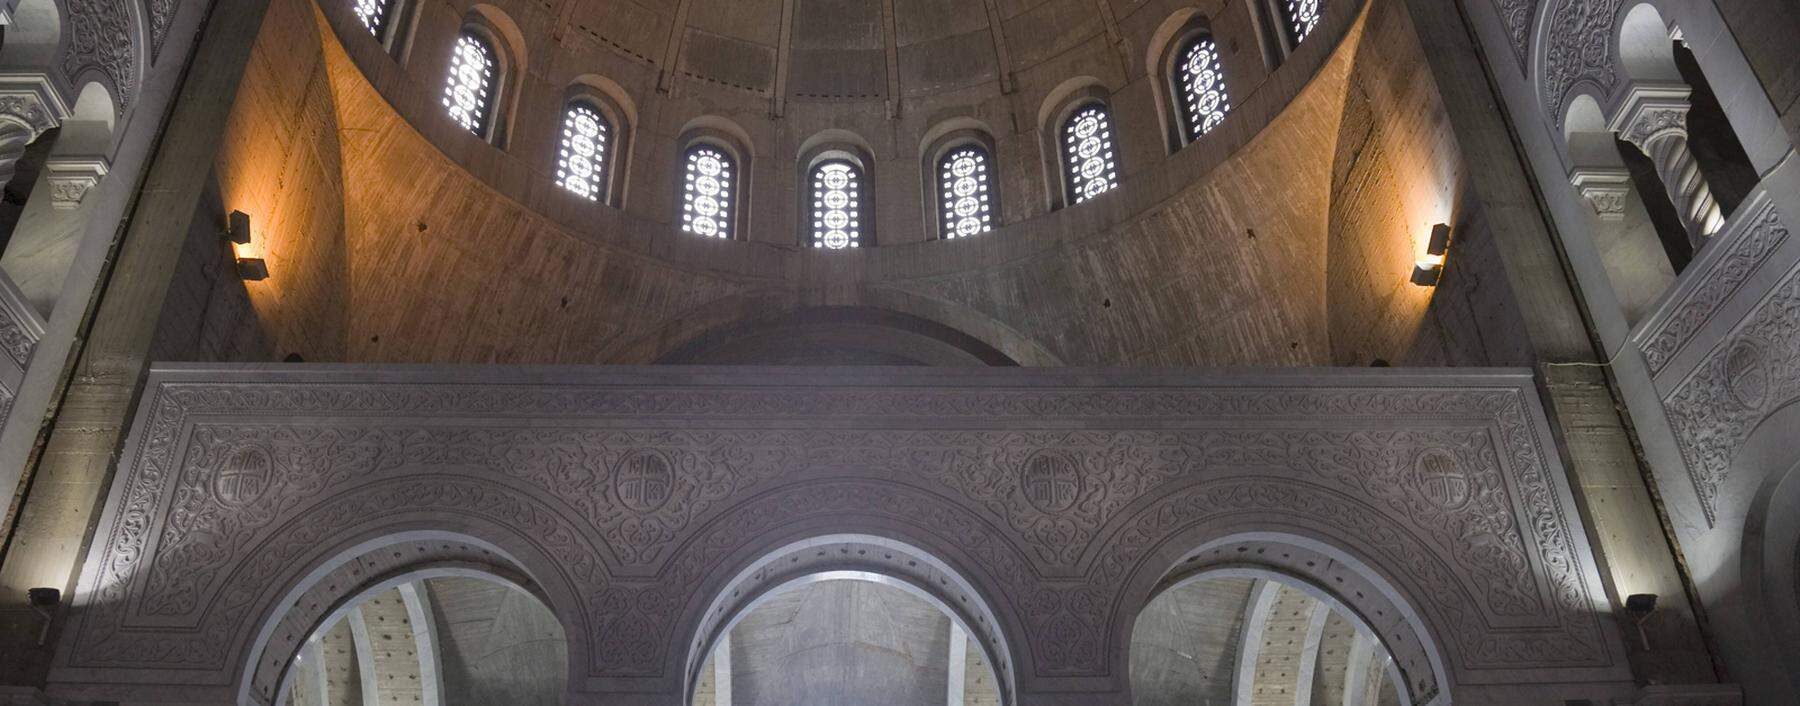 Der Dom des heiligen Sava, Serbisch Hram Svetog Save, ein monumentaler neobyzantinischer Bau, überwältigt schon beim Näherkommen.